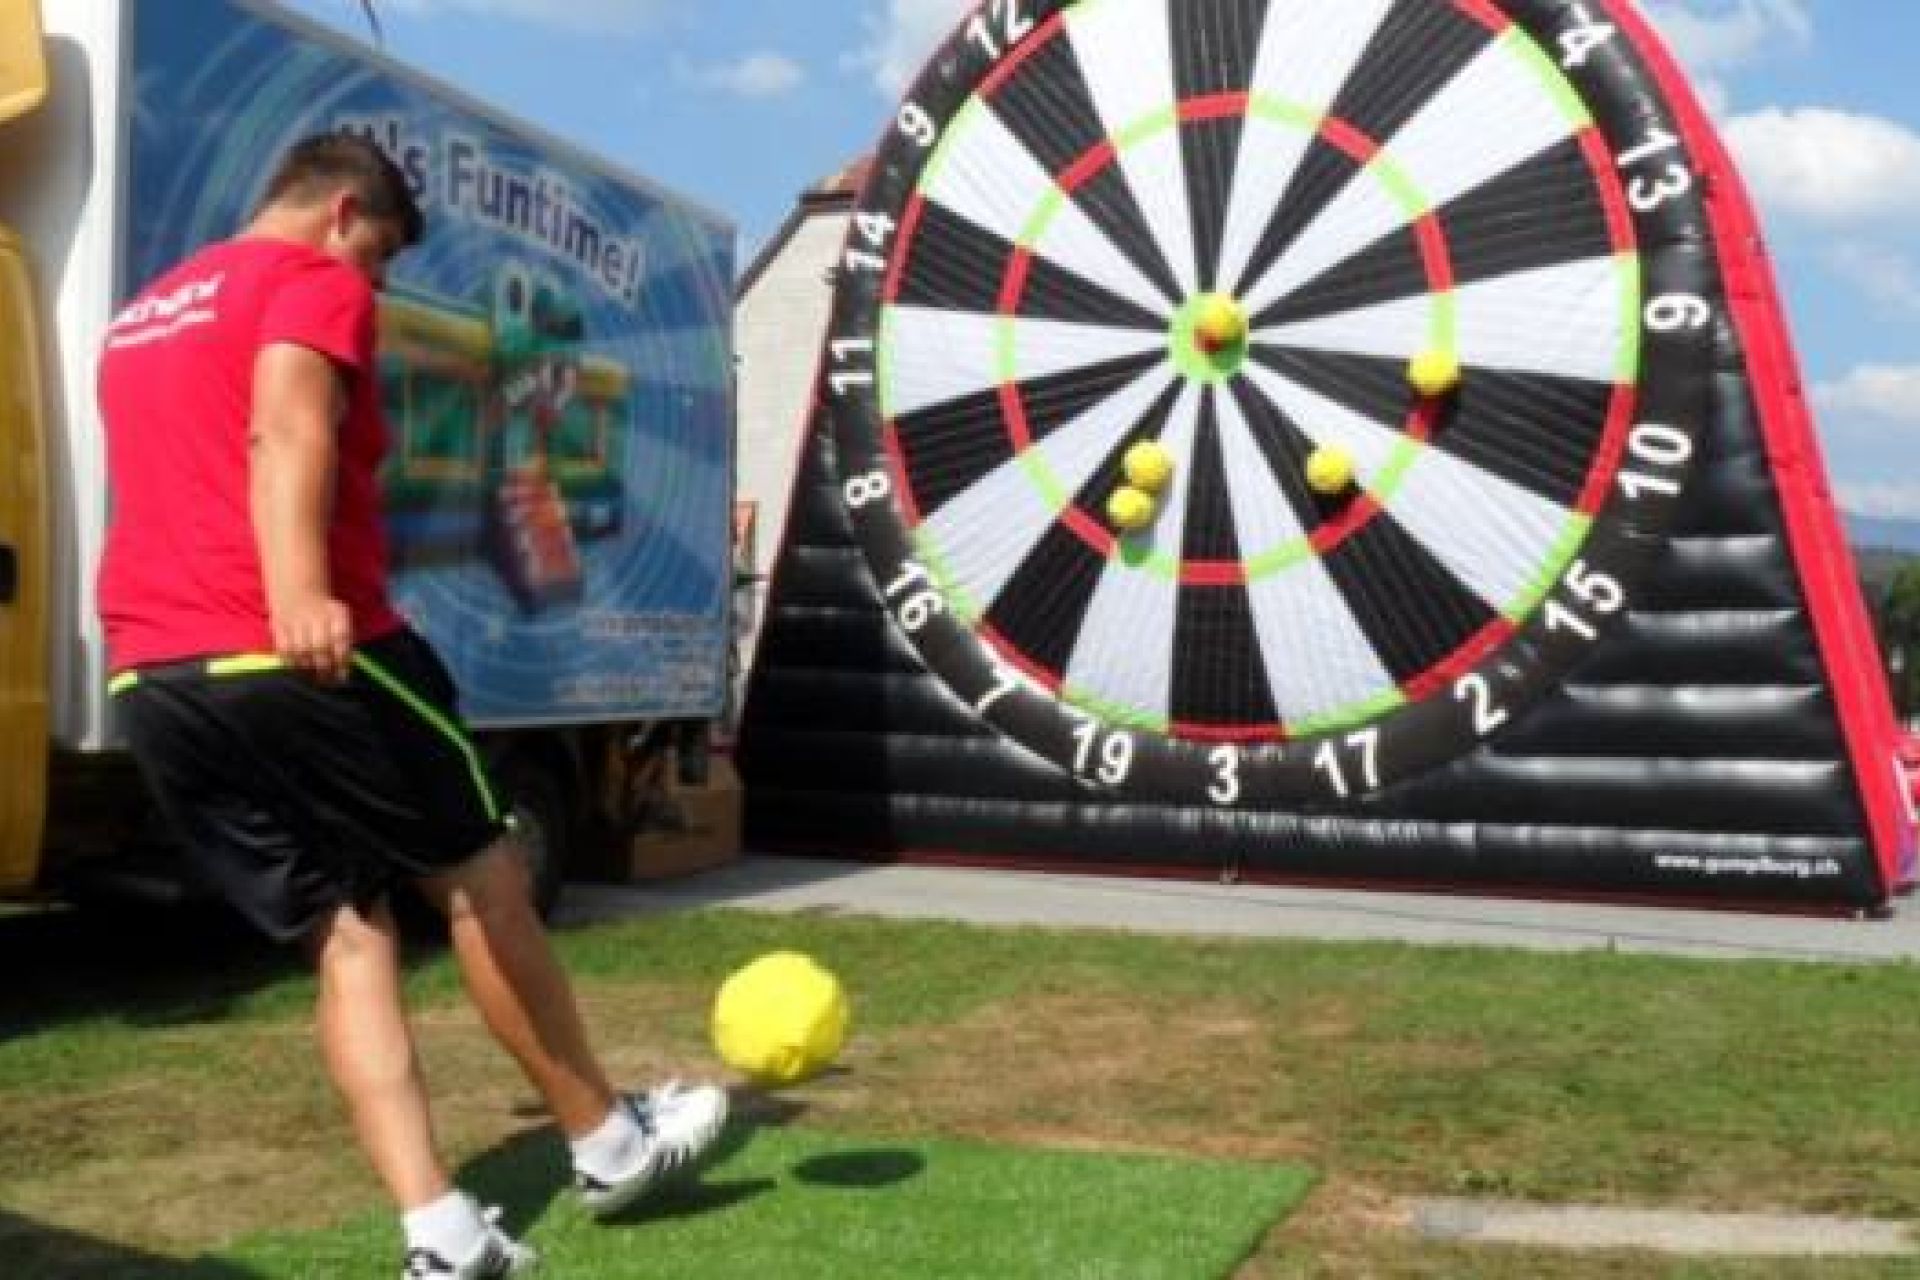 Joueur tirant sur une cible foot géante gonflable à scratch avec un ballon de foot velcro.